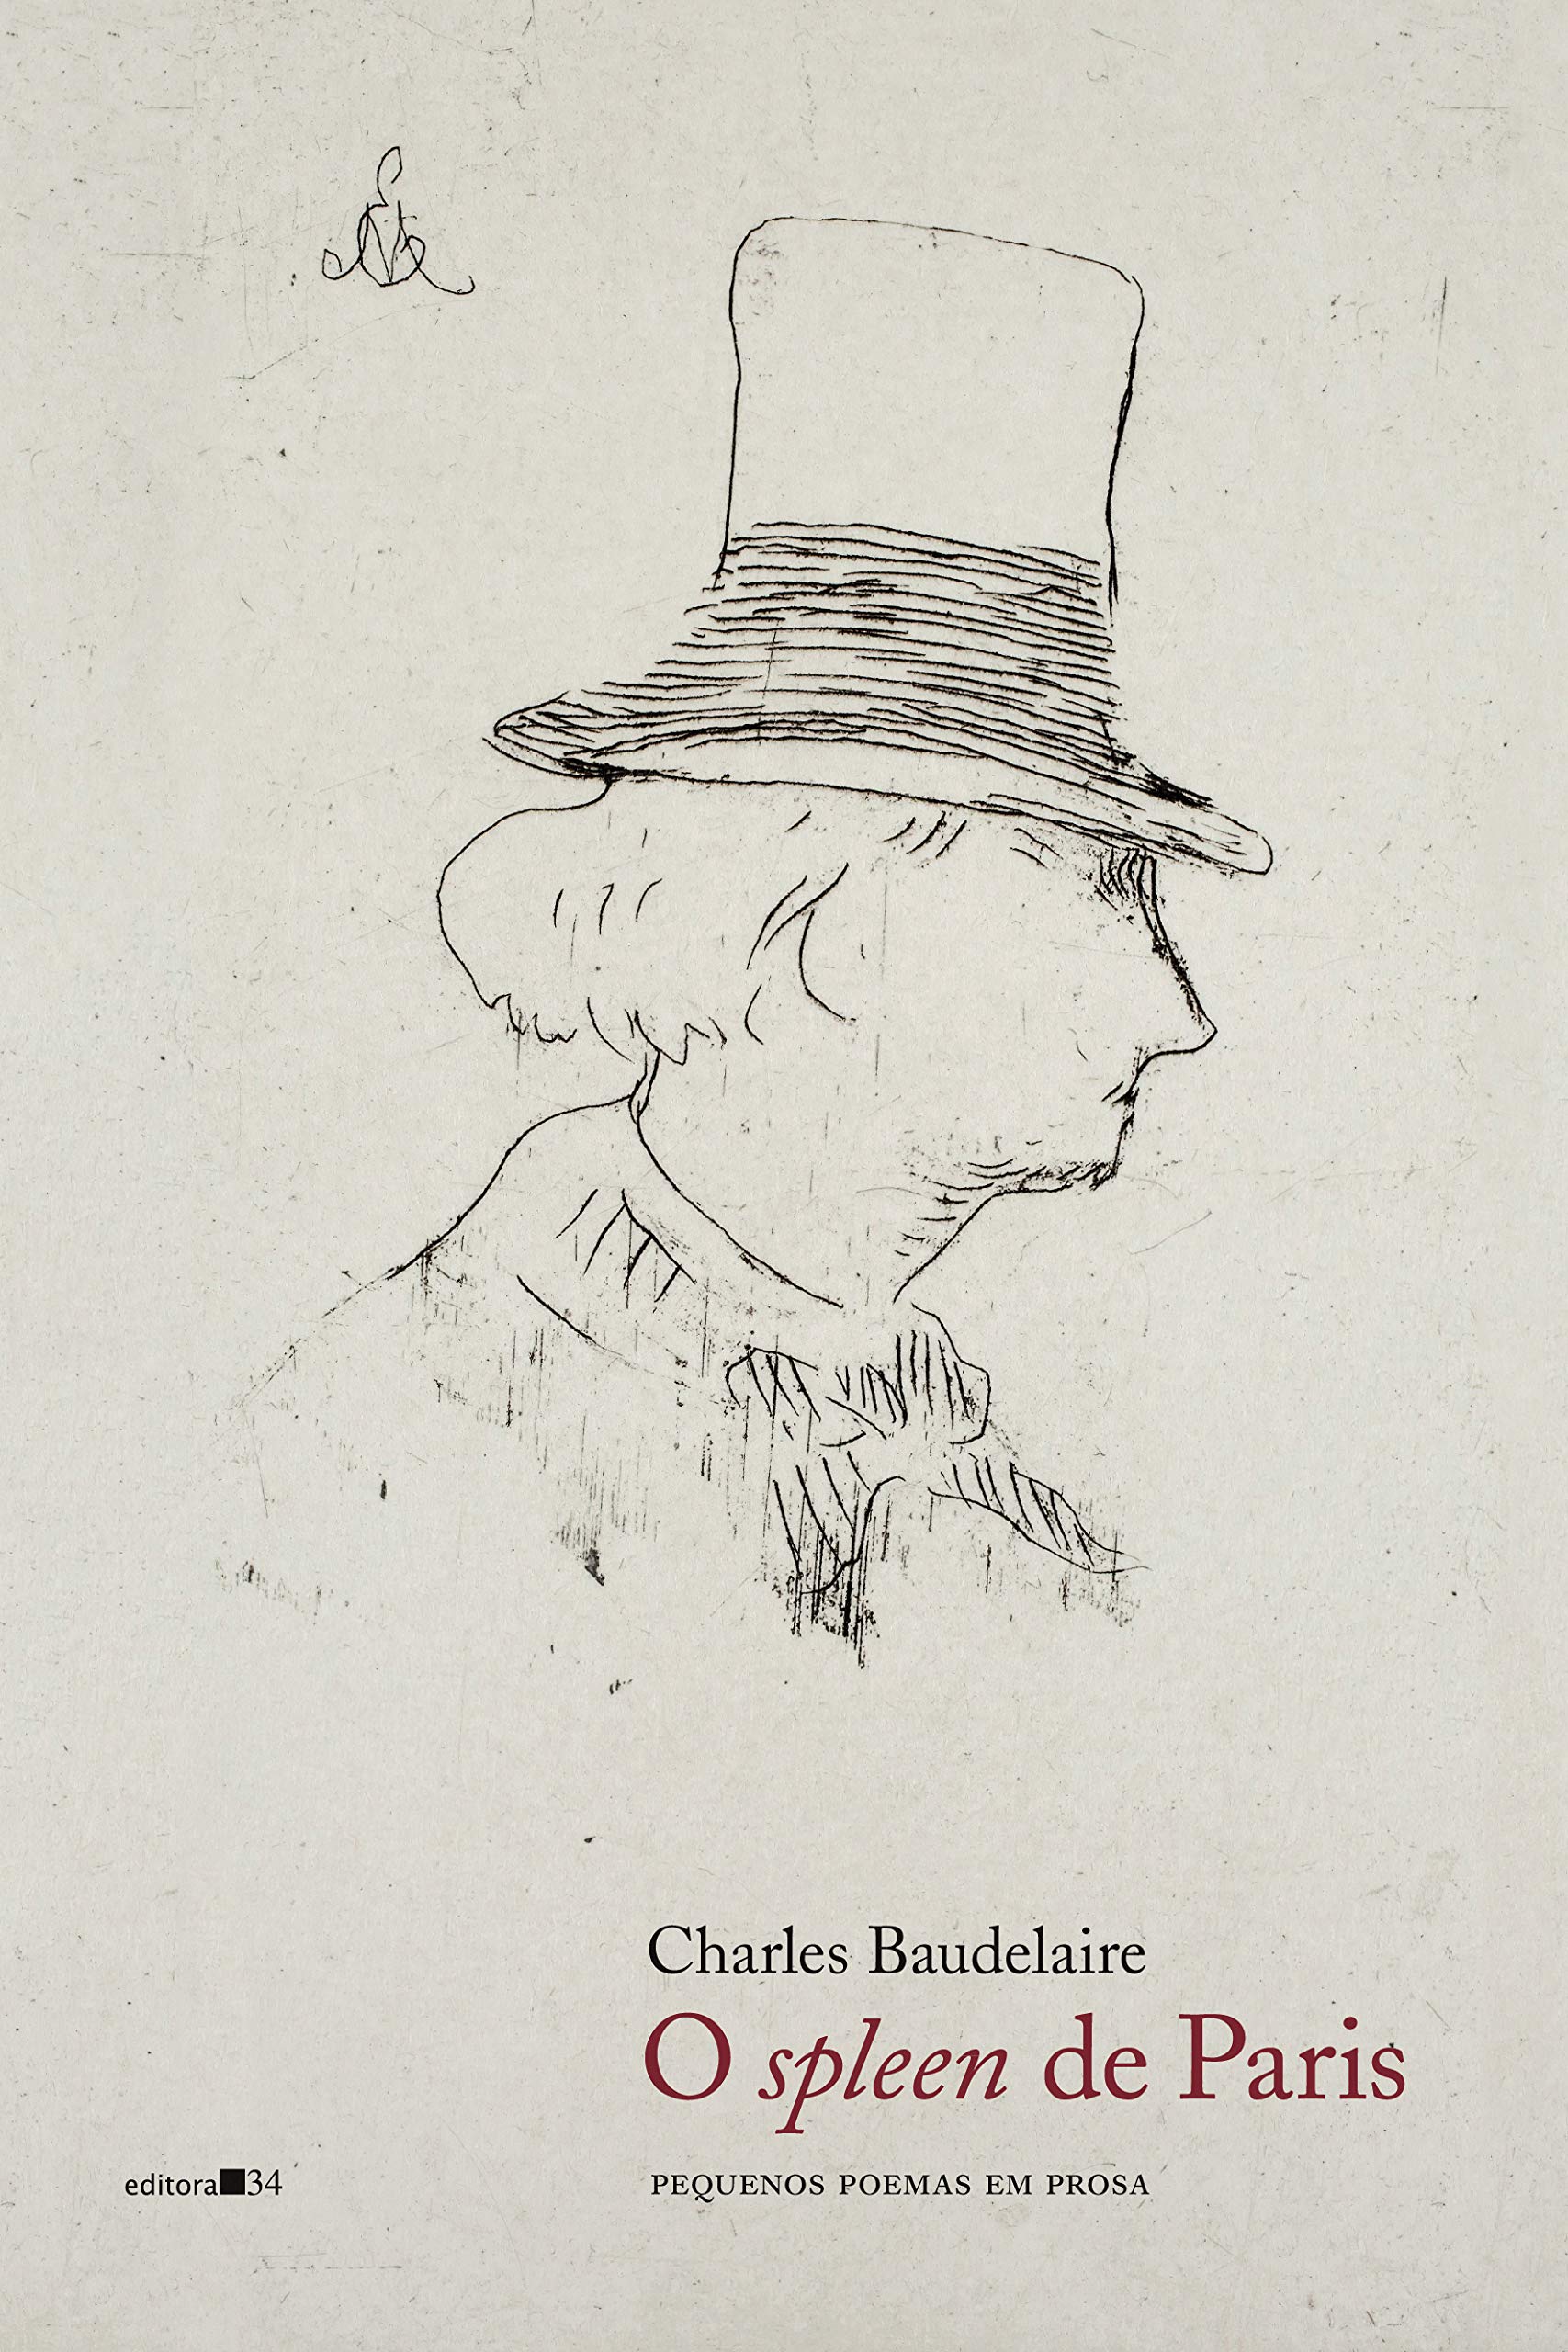 Capa do livro resenhado. Na imagem há um desenho com a silhueta do rosto do poeta Baudelaire, feito a carvão sobre papel.